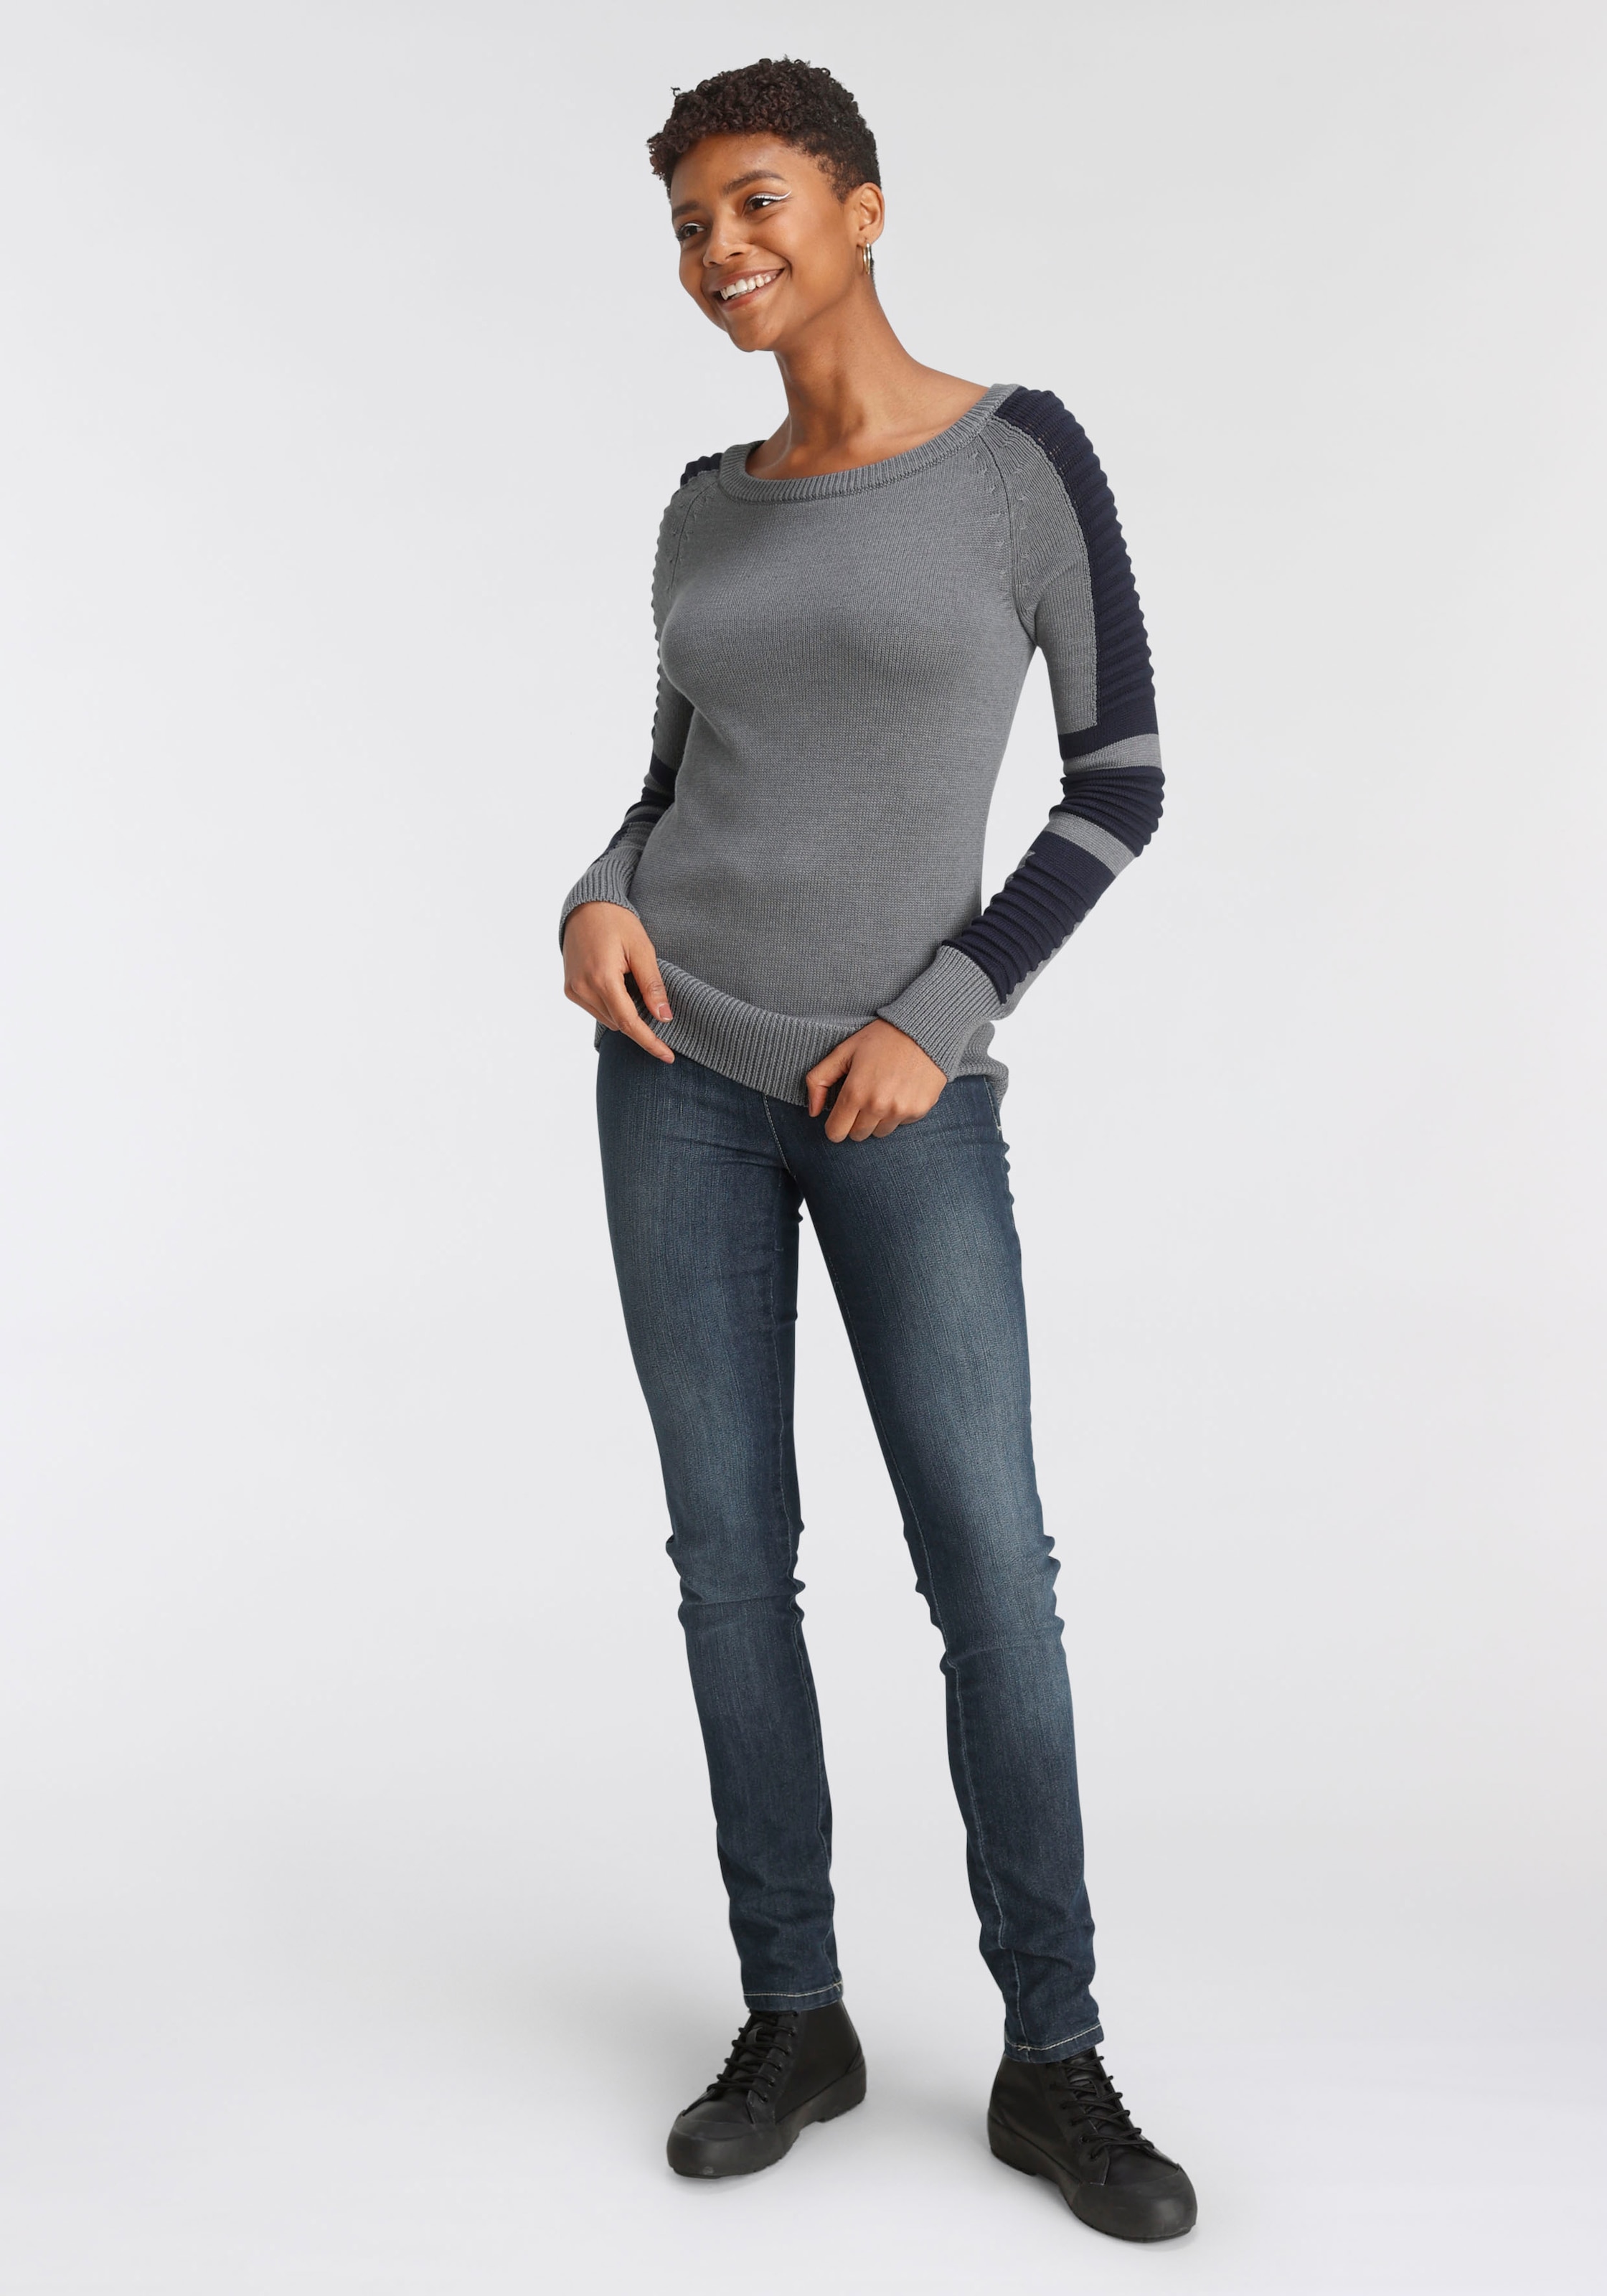 Arizona Skinny-fit-Jeans, Mid Waist Comfort-Stretch